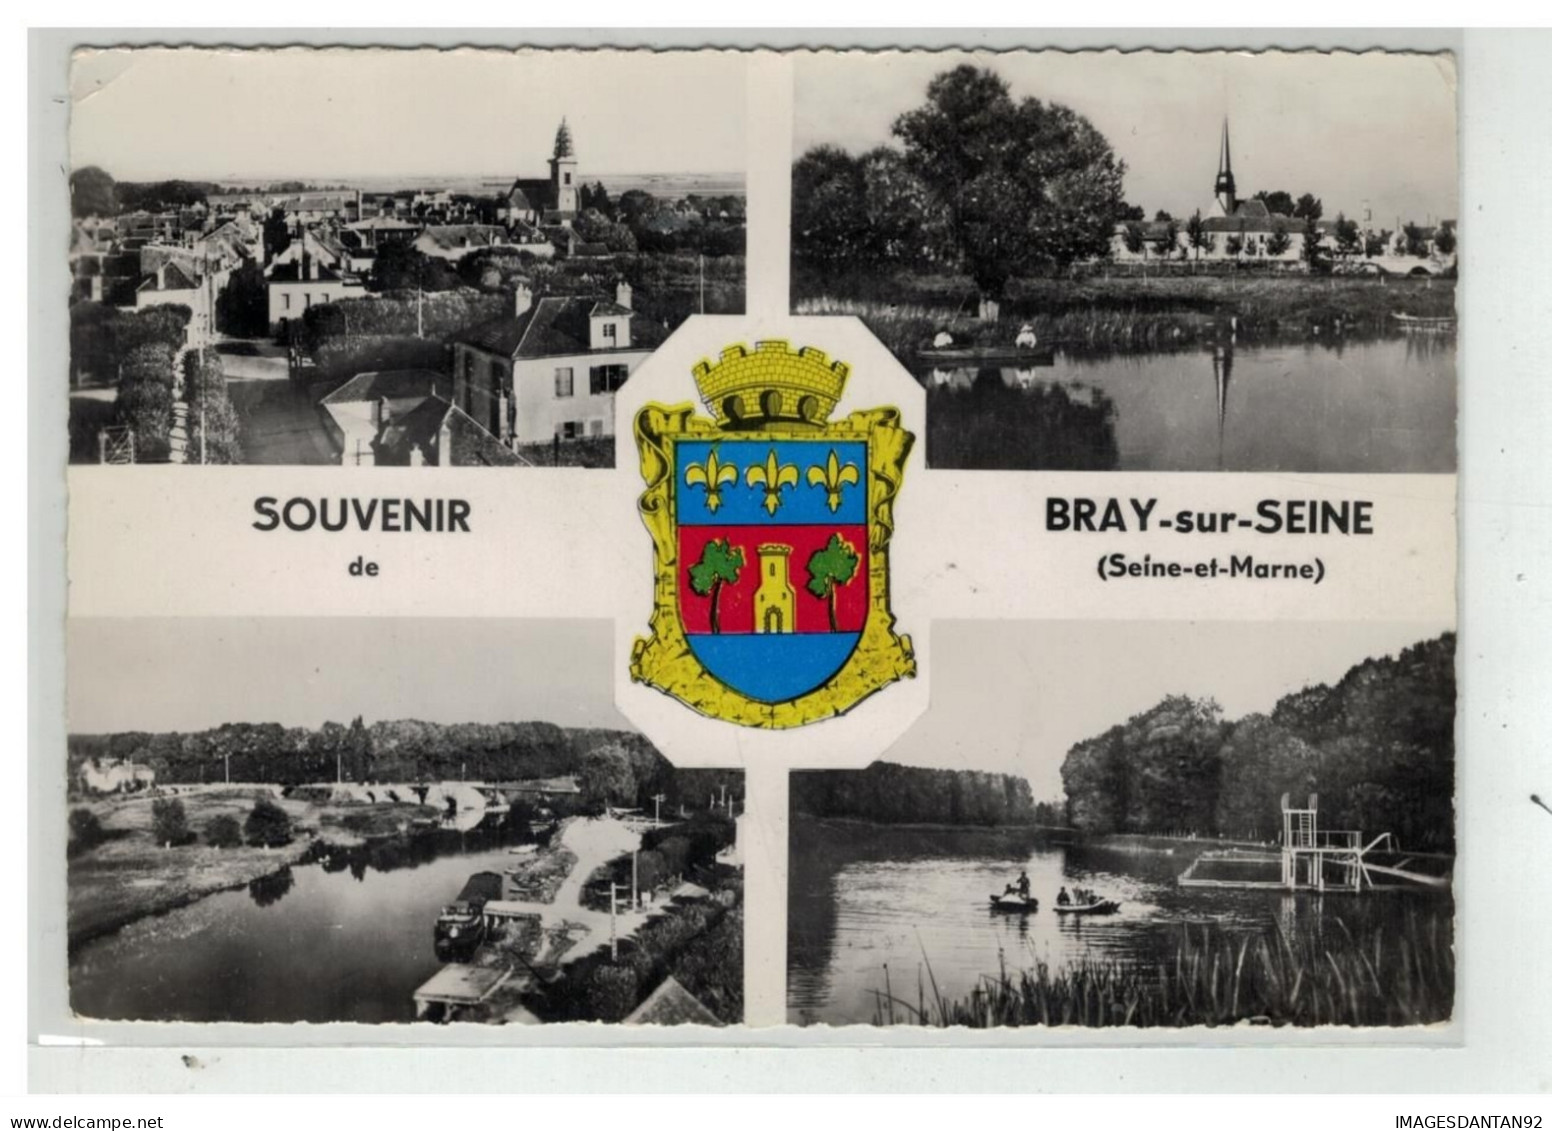 77 BRAY SUR SEINE #19346 SOUVENIR VUE AERIENNE BLASON - Bray Sur Seine